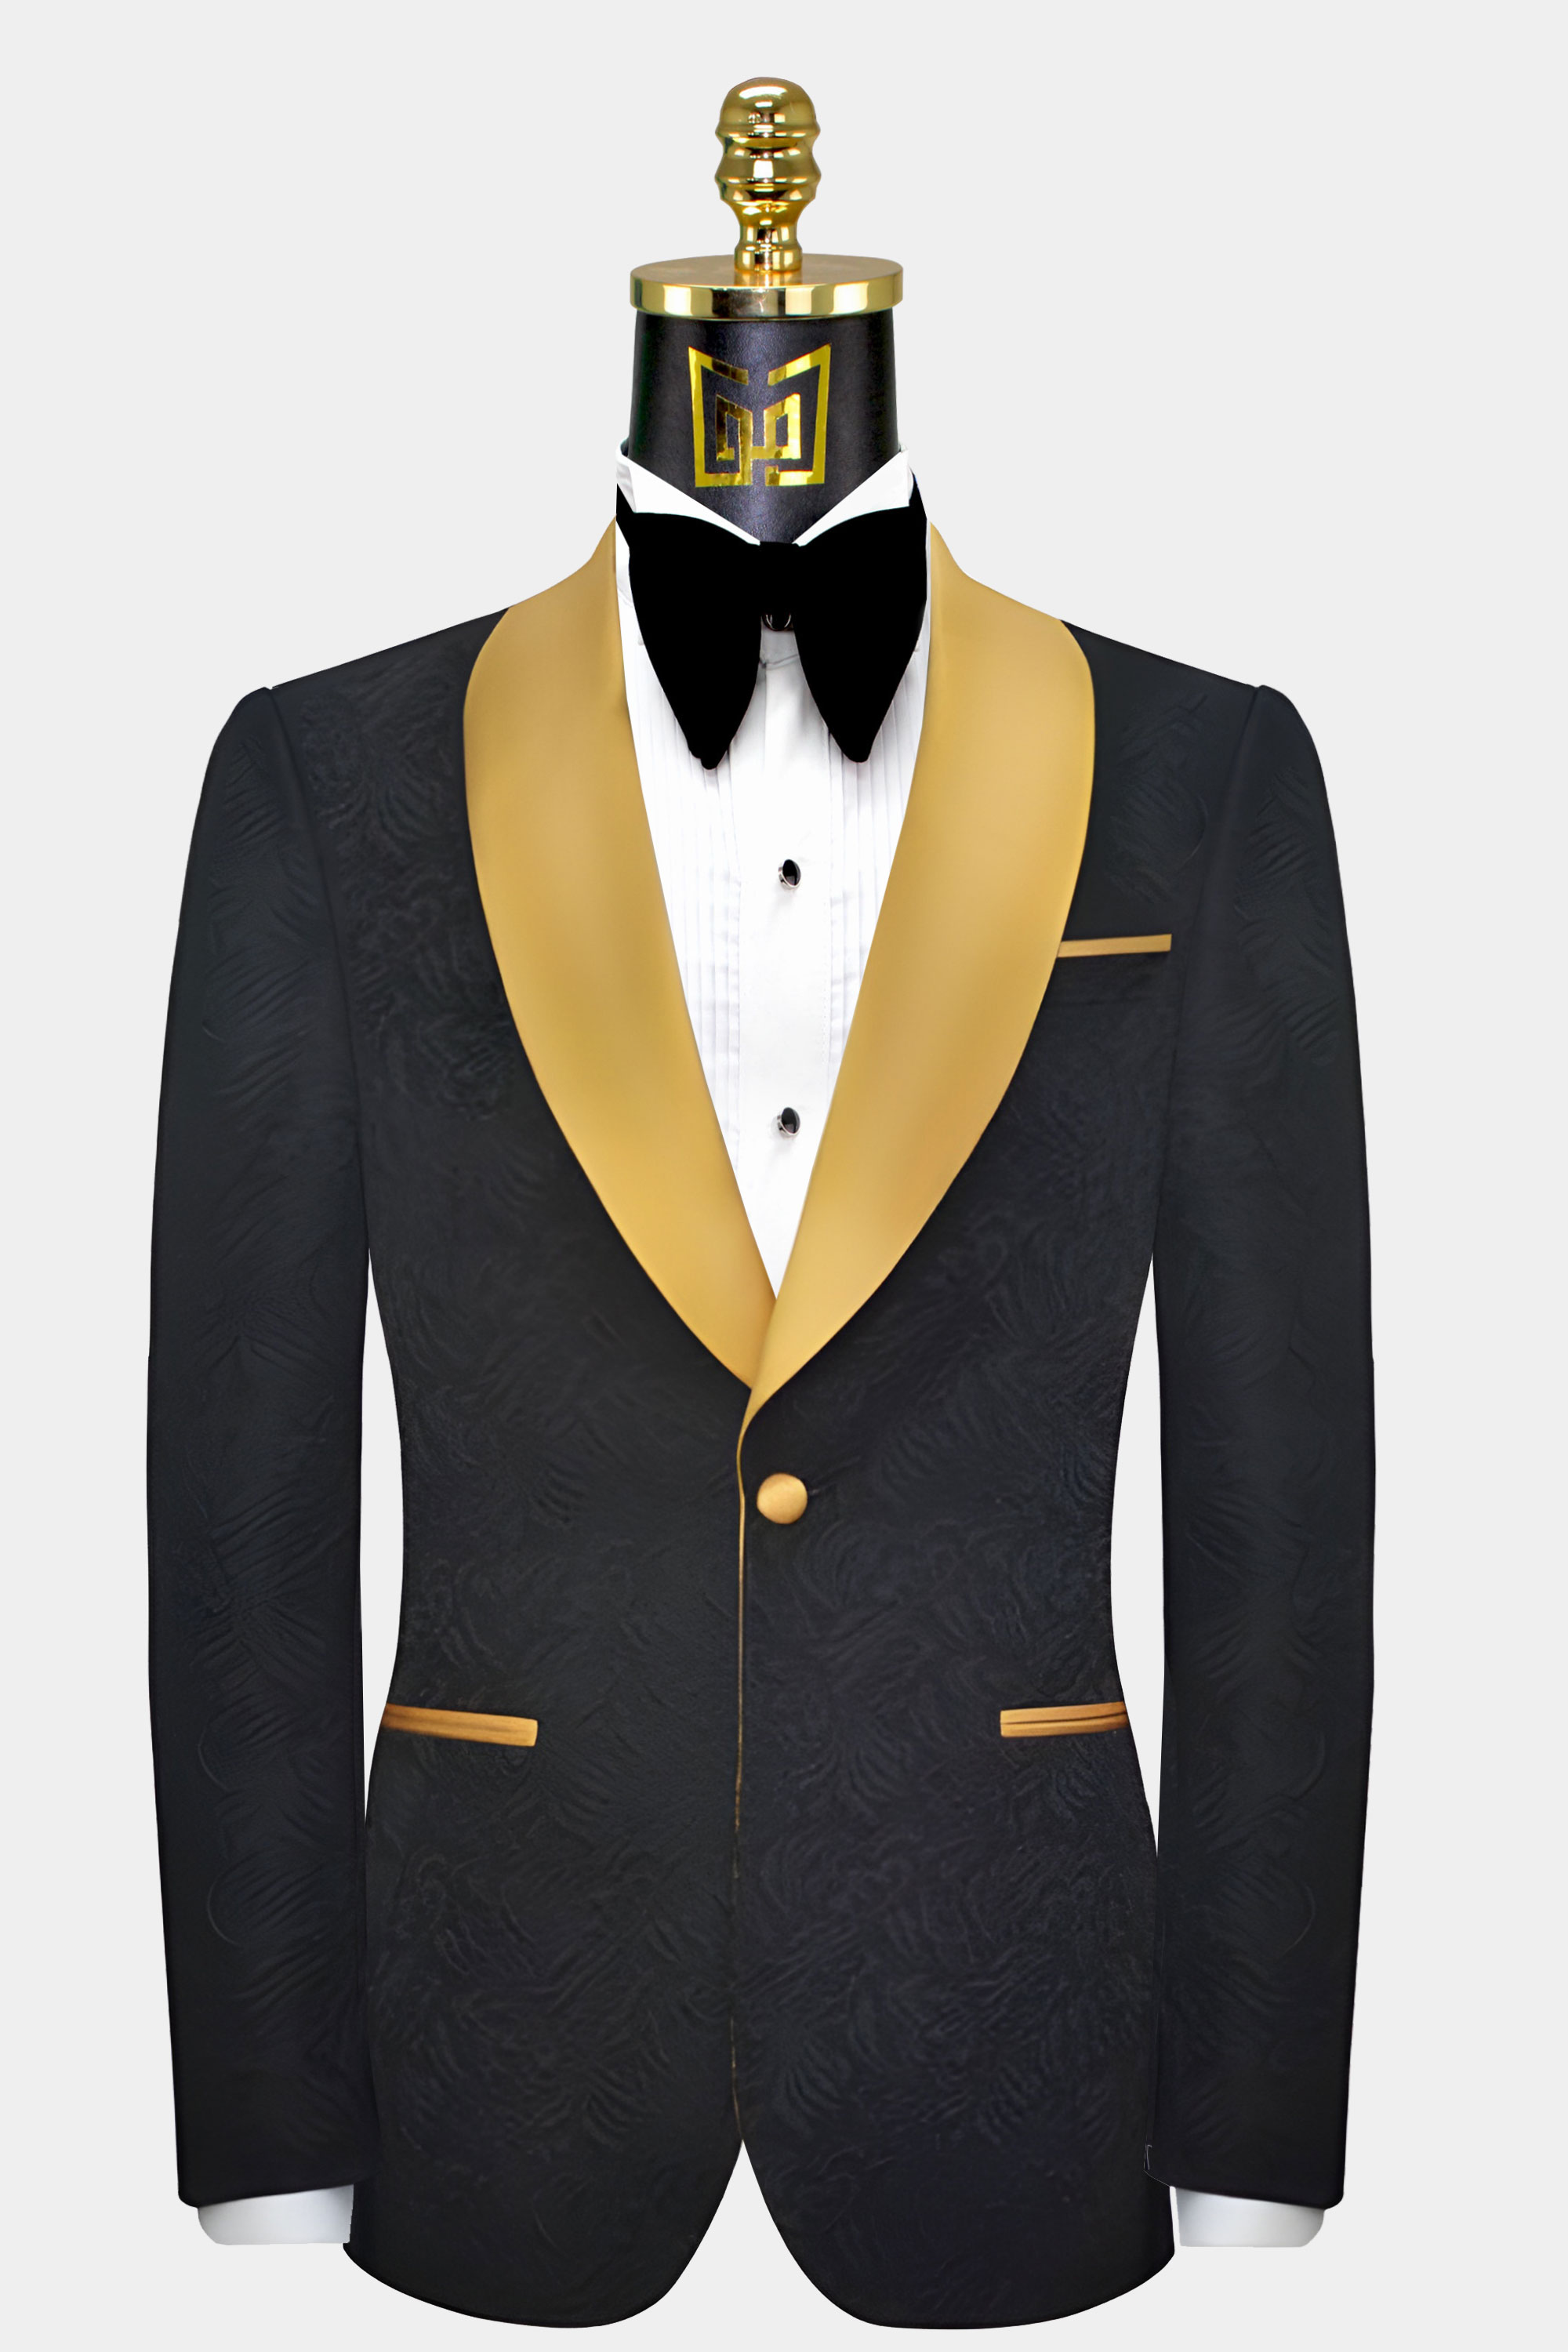 Gold Black Suit | vlr.eng.br